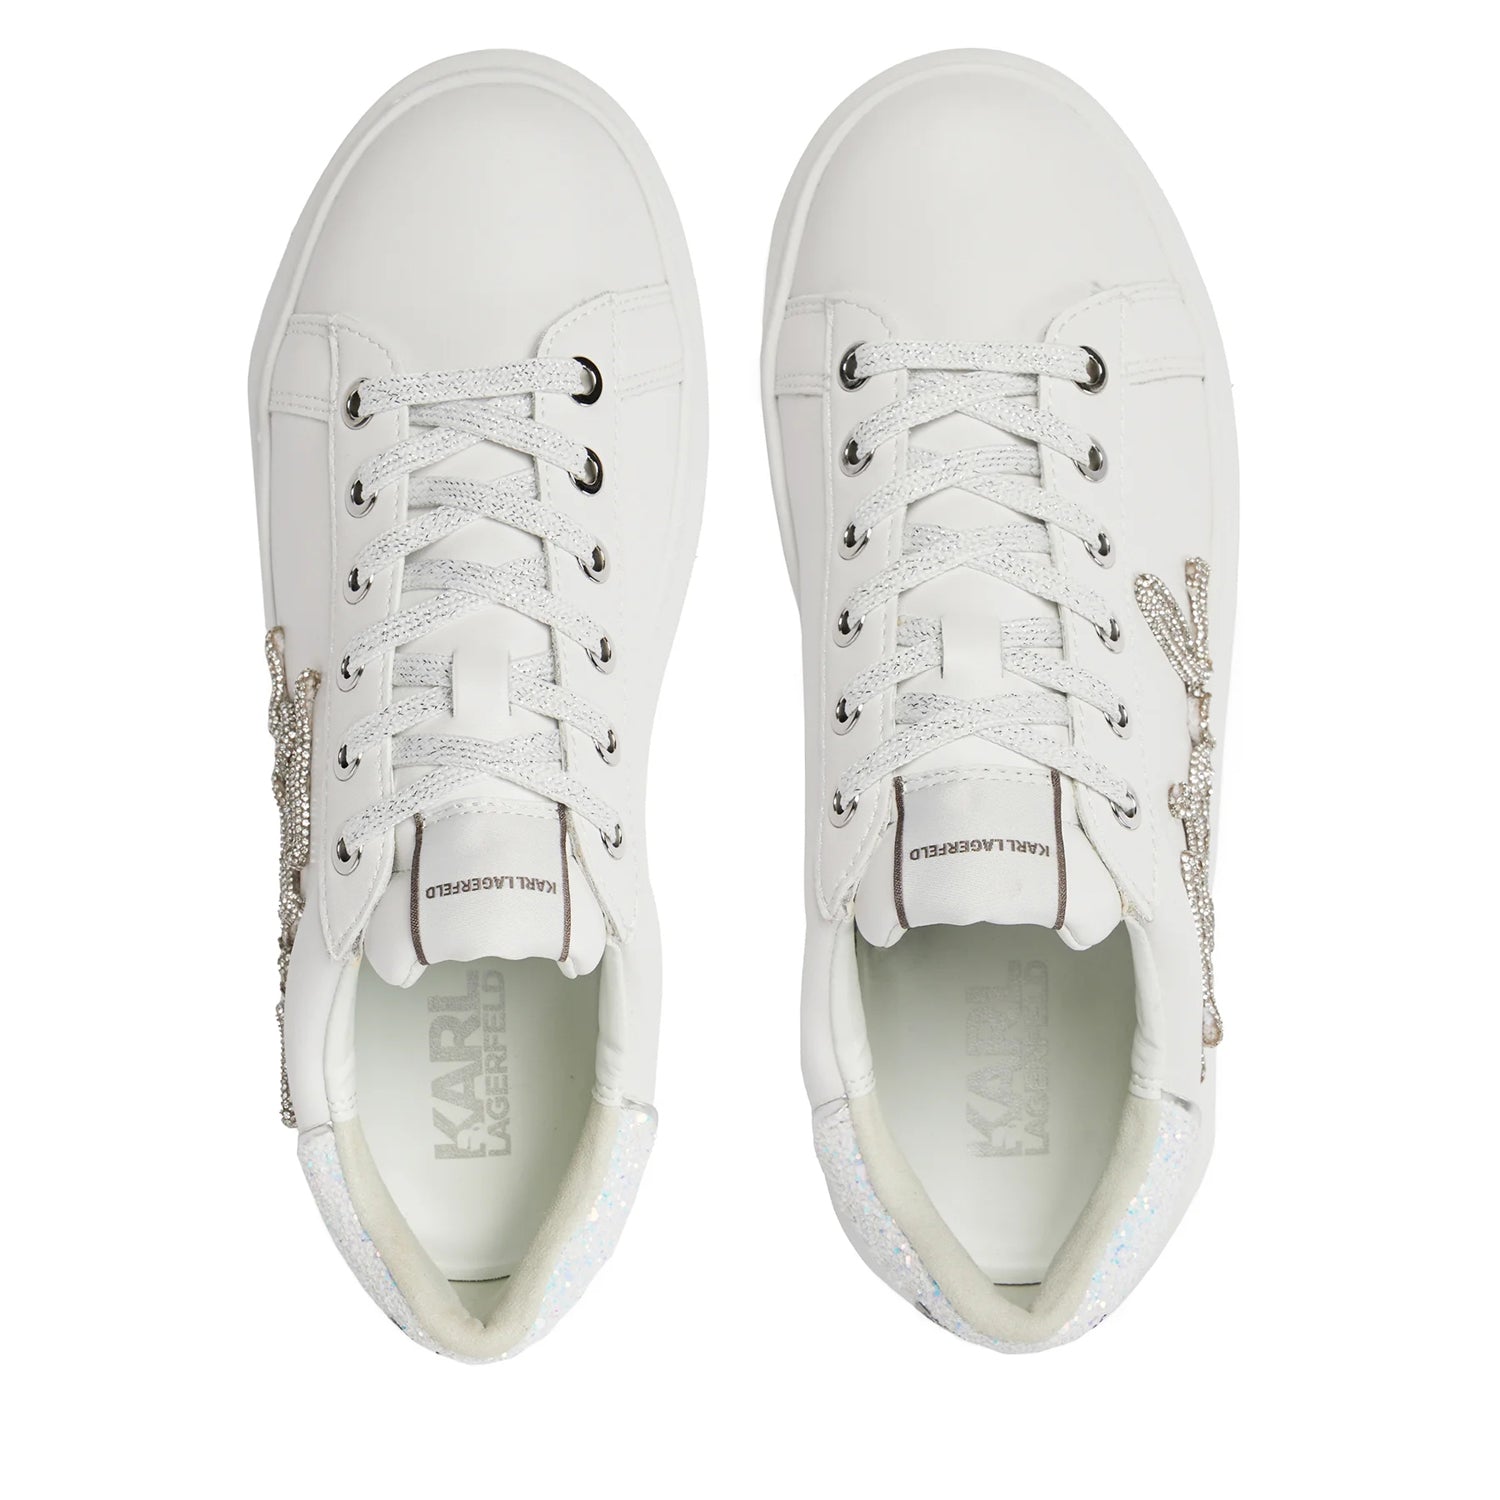 Karl Lagerfeld Sapatilhas Sneakers Shoes Kl62510g Whi Silver Branco Prateado_shot4